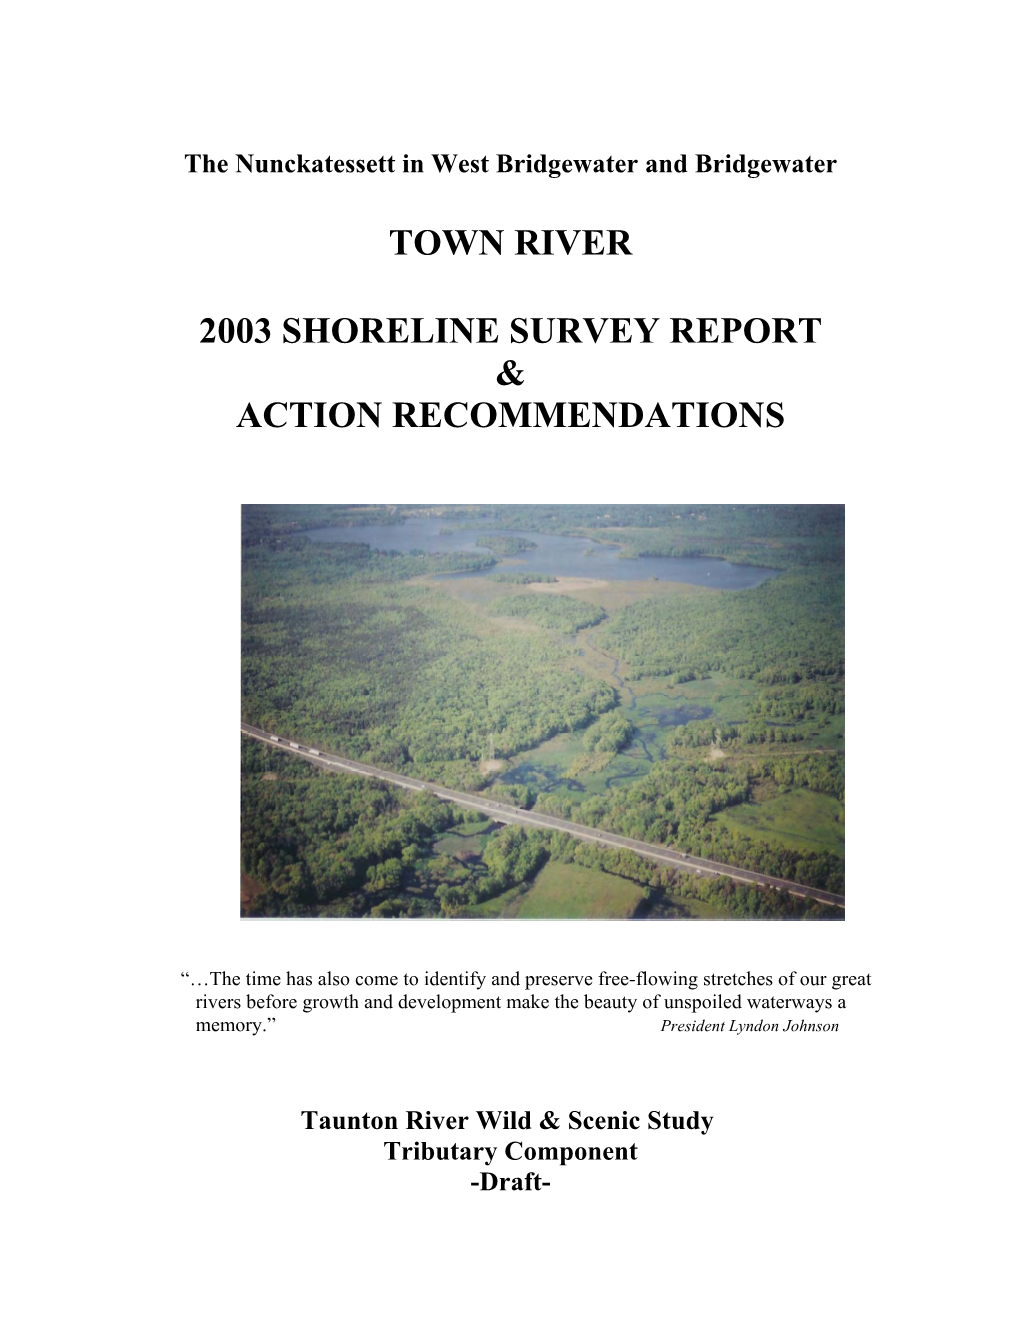 Town River Shoreline Survey